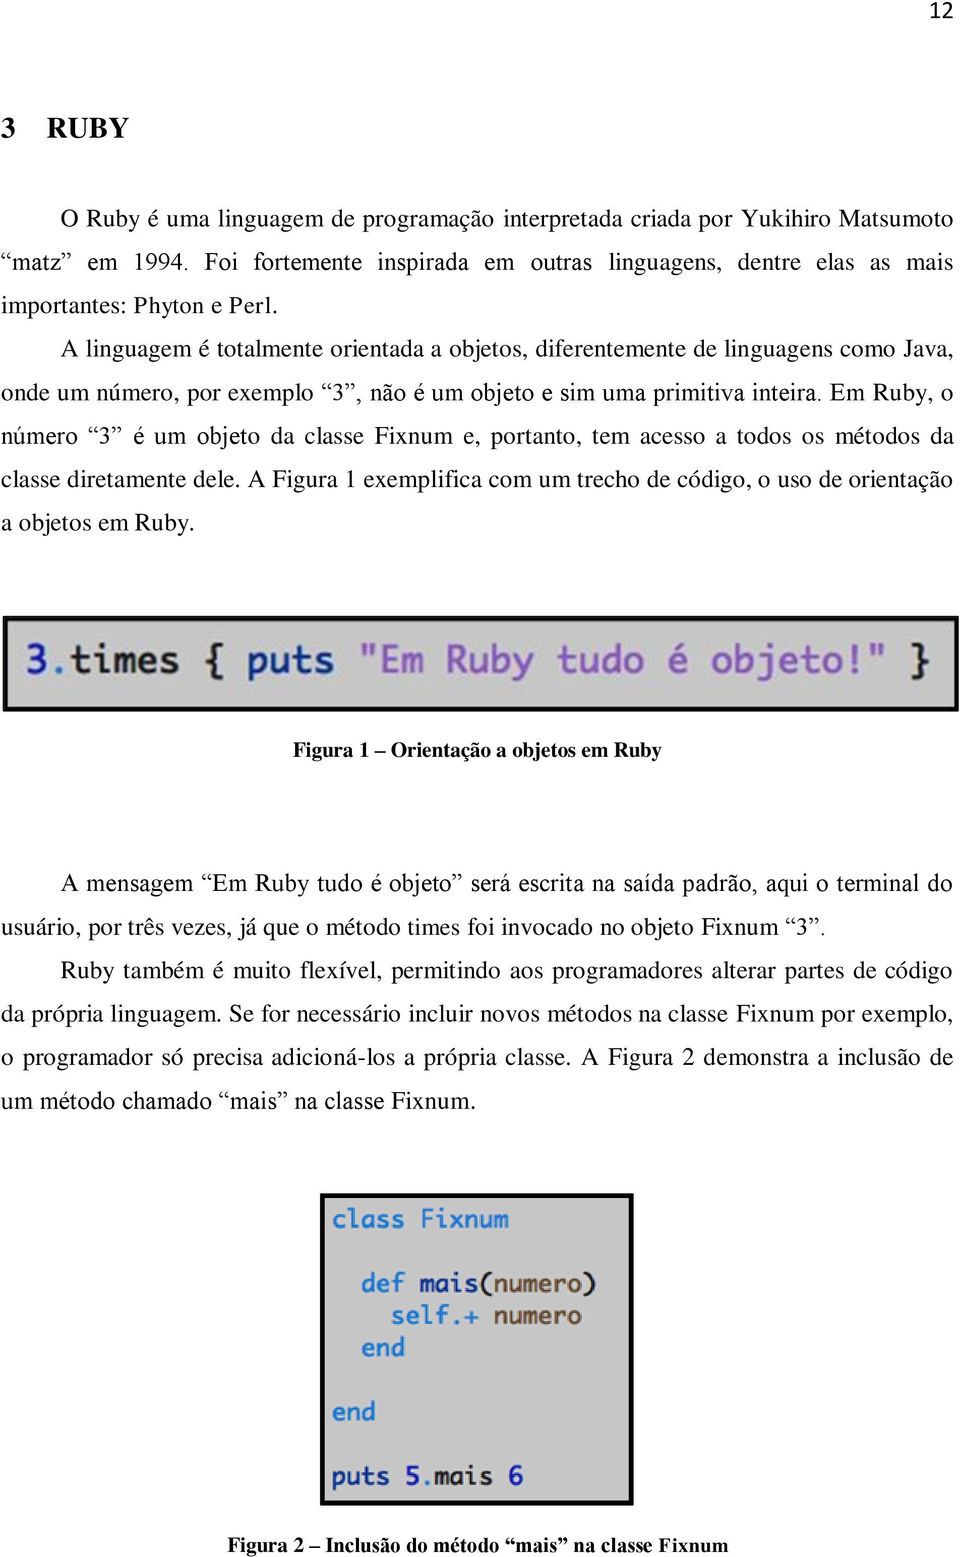 Em Ruby, o número 3 é um objeto da classe Fixnum e, portanto, tem acesso a todos os métodos da classe diretamente dele.